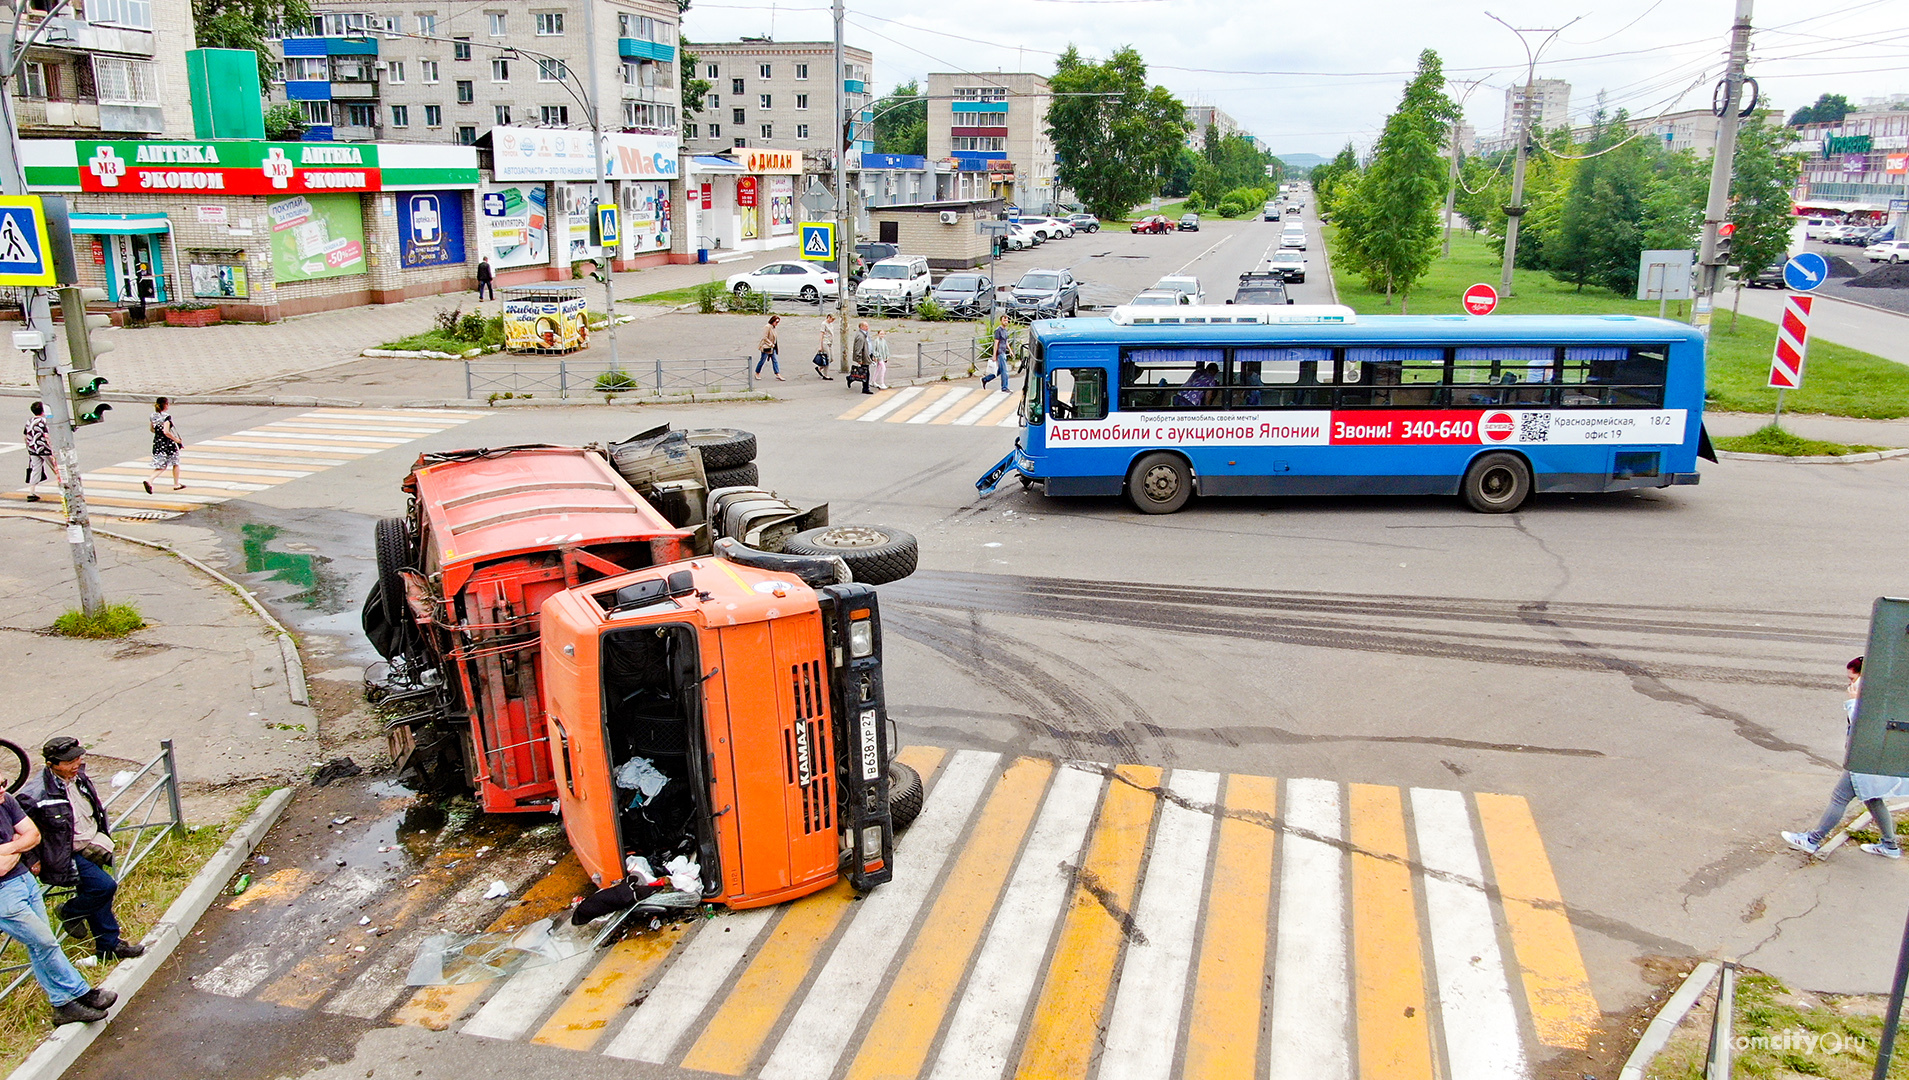 Автобус был не прав — В ГИБДД рассказали подробности о столкновении автобуса и мусоровоза в Комсомольске-на-Амуре